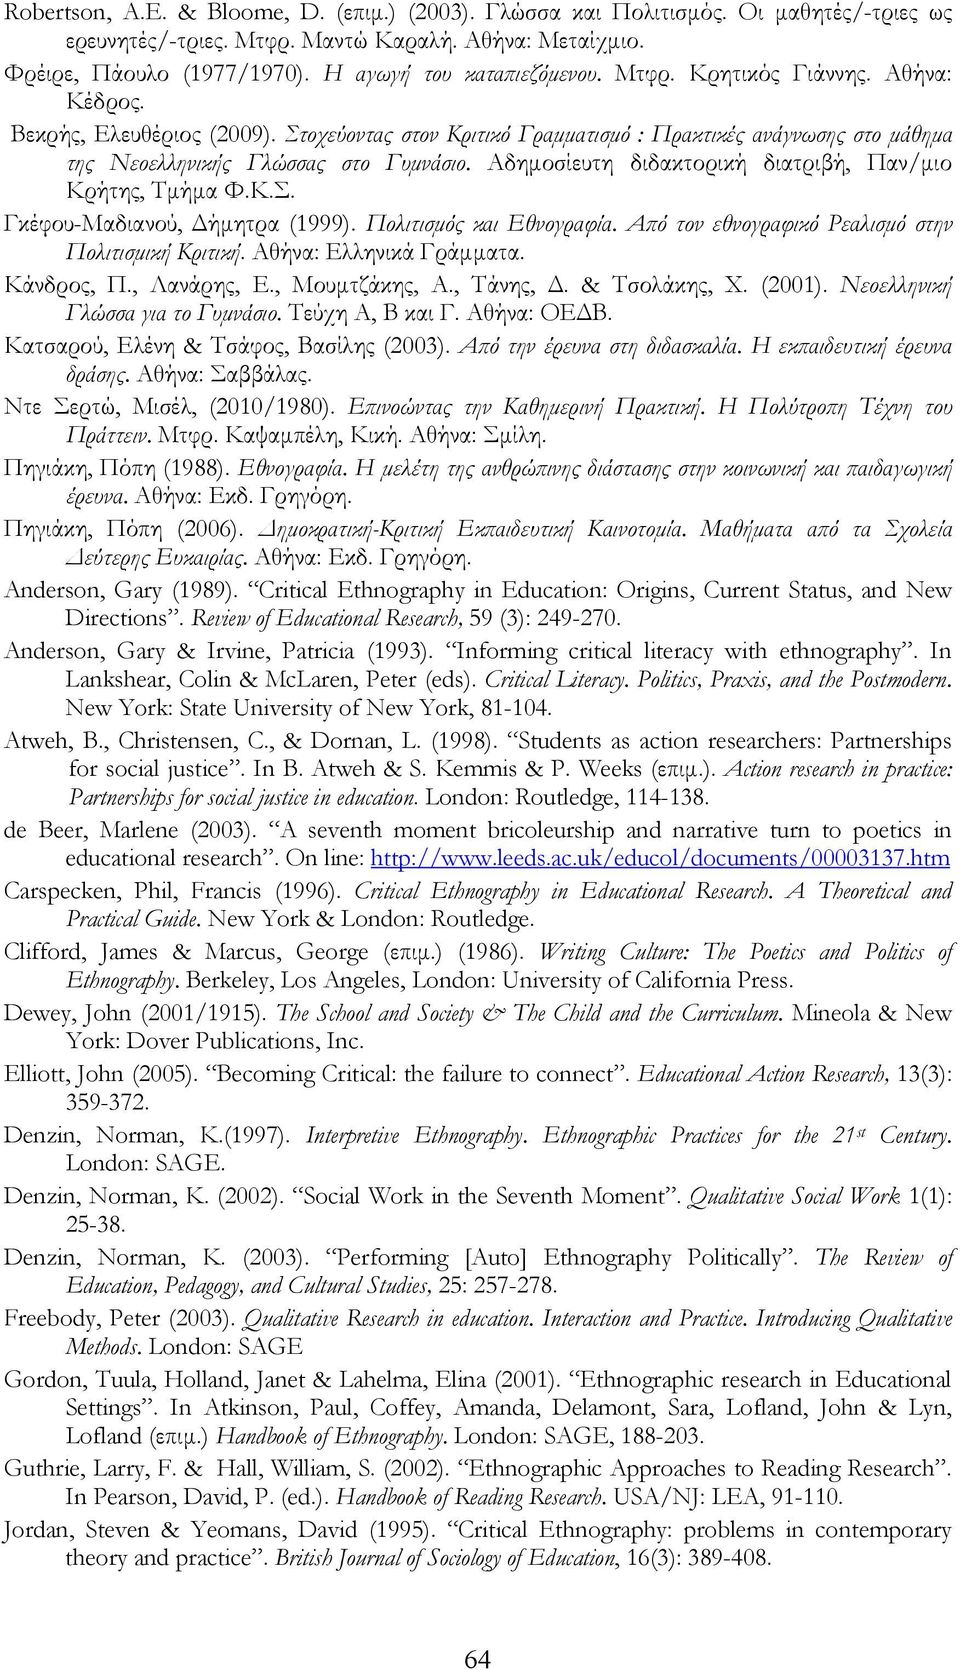 Αδημοσίευτη διδακτορική διατριβή, Παν/μιο Κρήτης, Τμήμα Φ.Κ.Σ. Γκέφου-Μαδιανού, Δήμητρα (1999). Πολιτισμός και Εθνογραφία. Από τον εθνογραφικό Ρεαλισμό στην Πολιτισμική Κριτική.